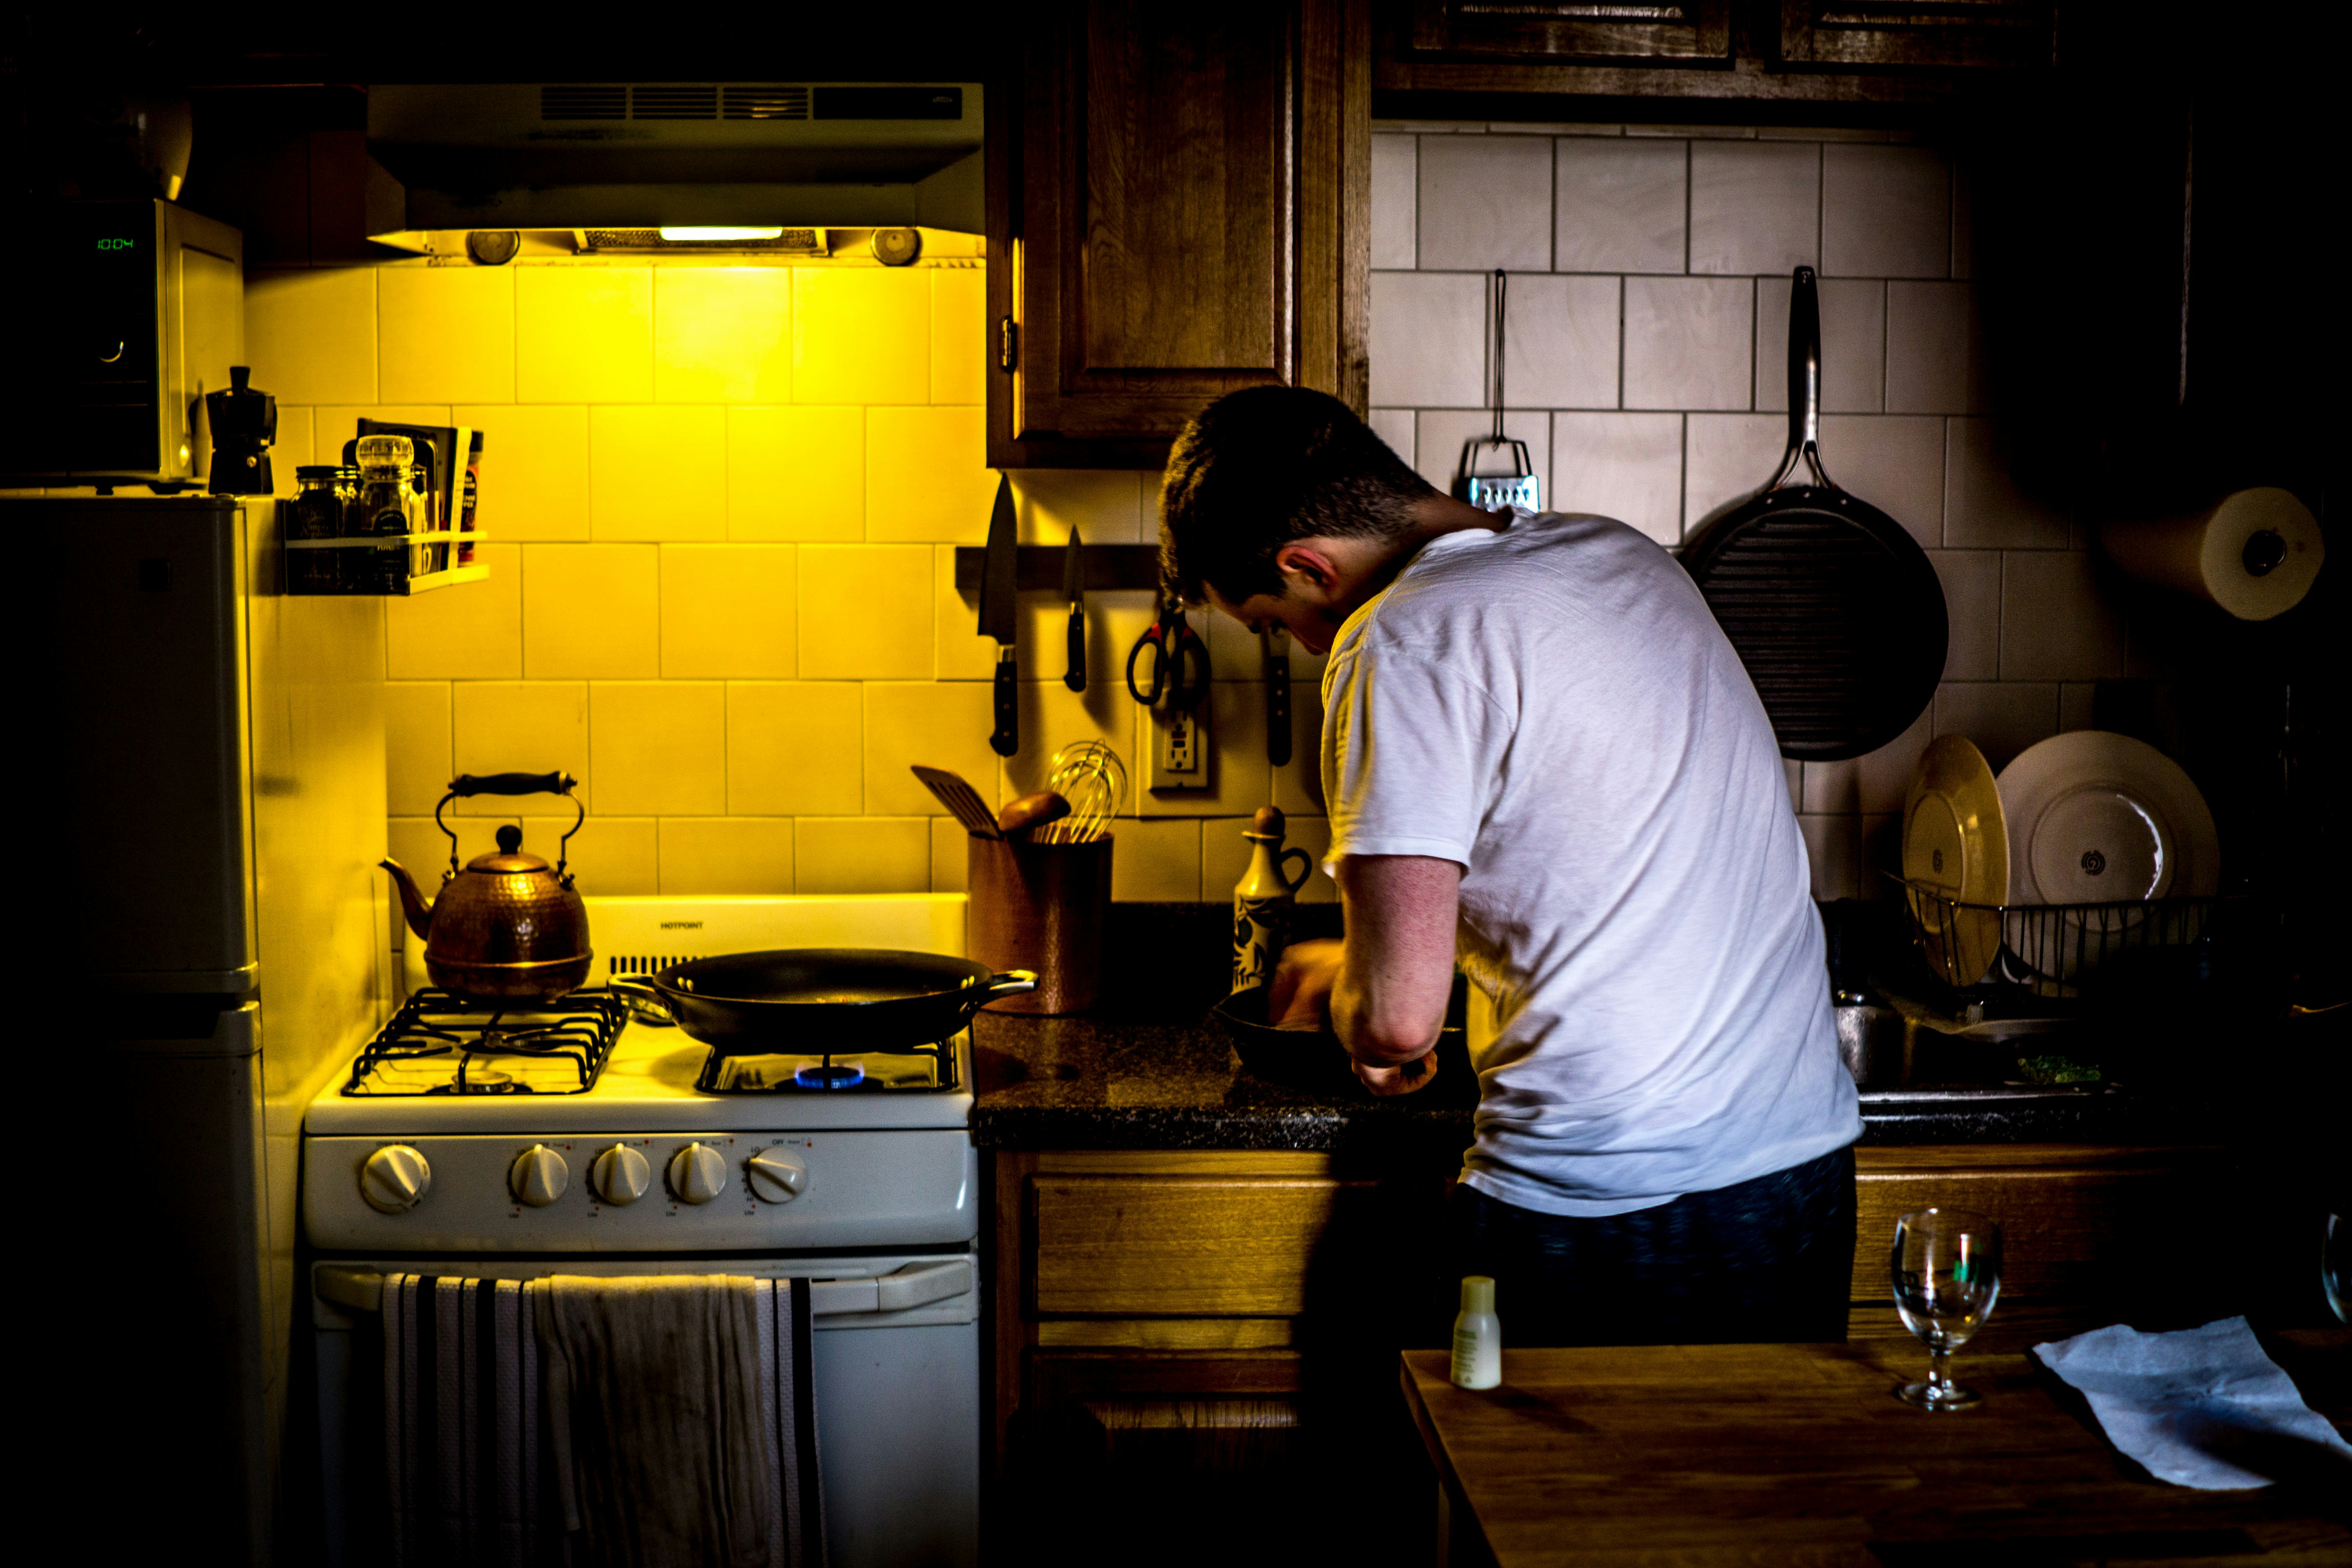 Un homme en train de cuisiner | Source : Unplash